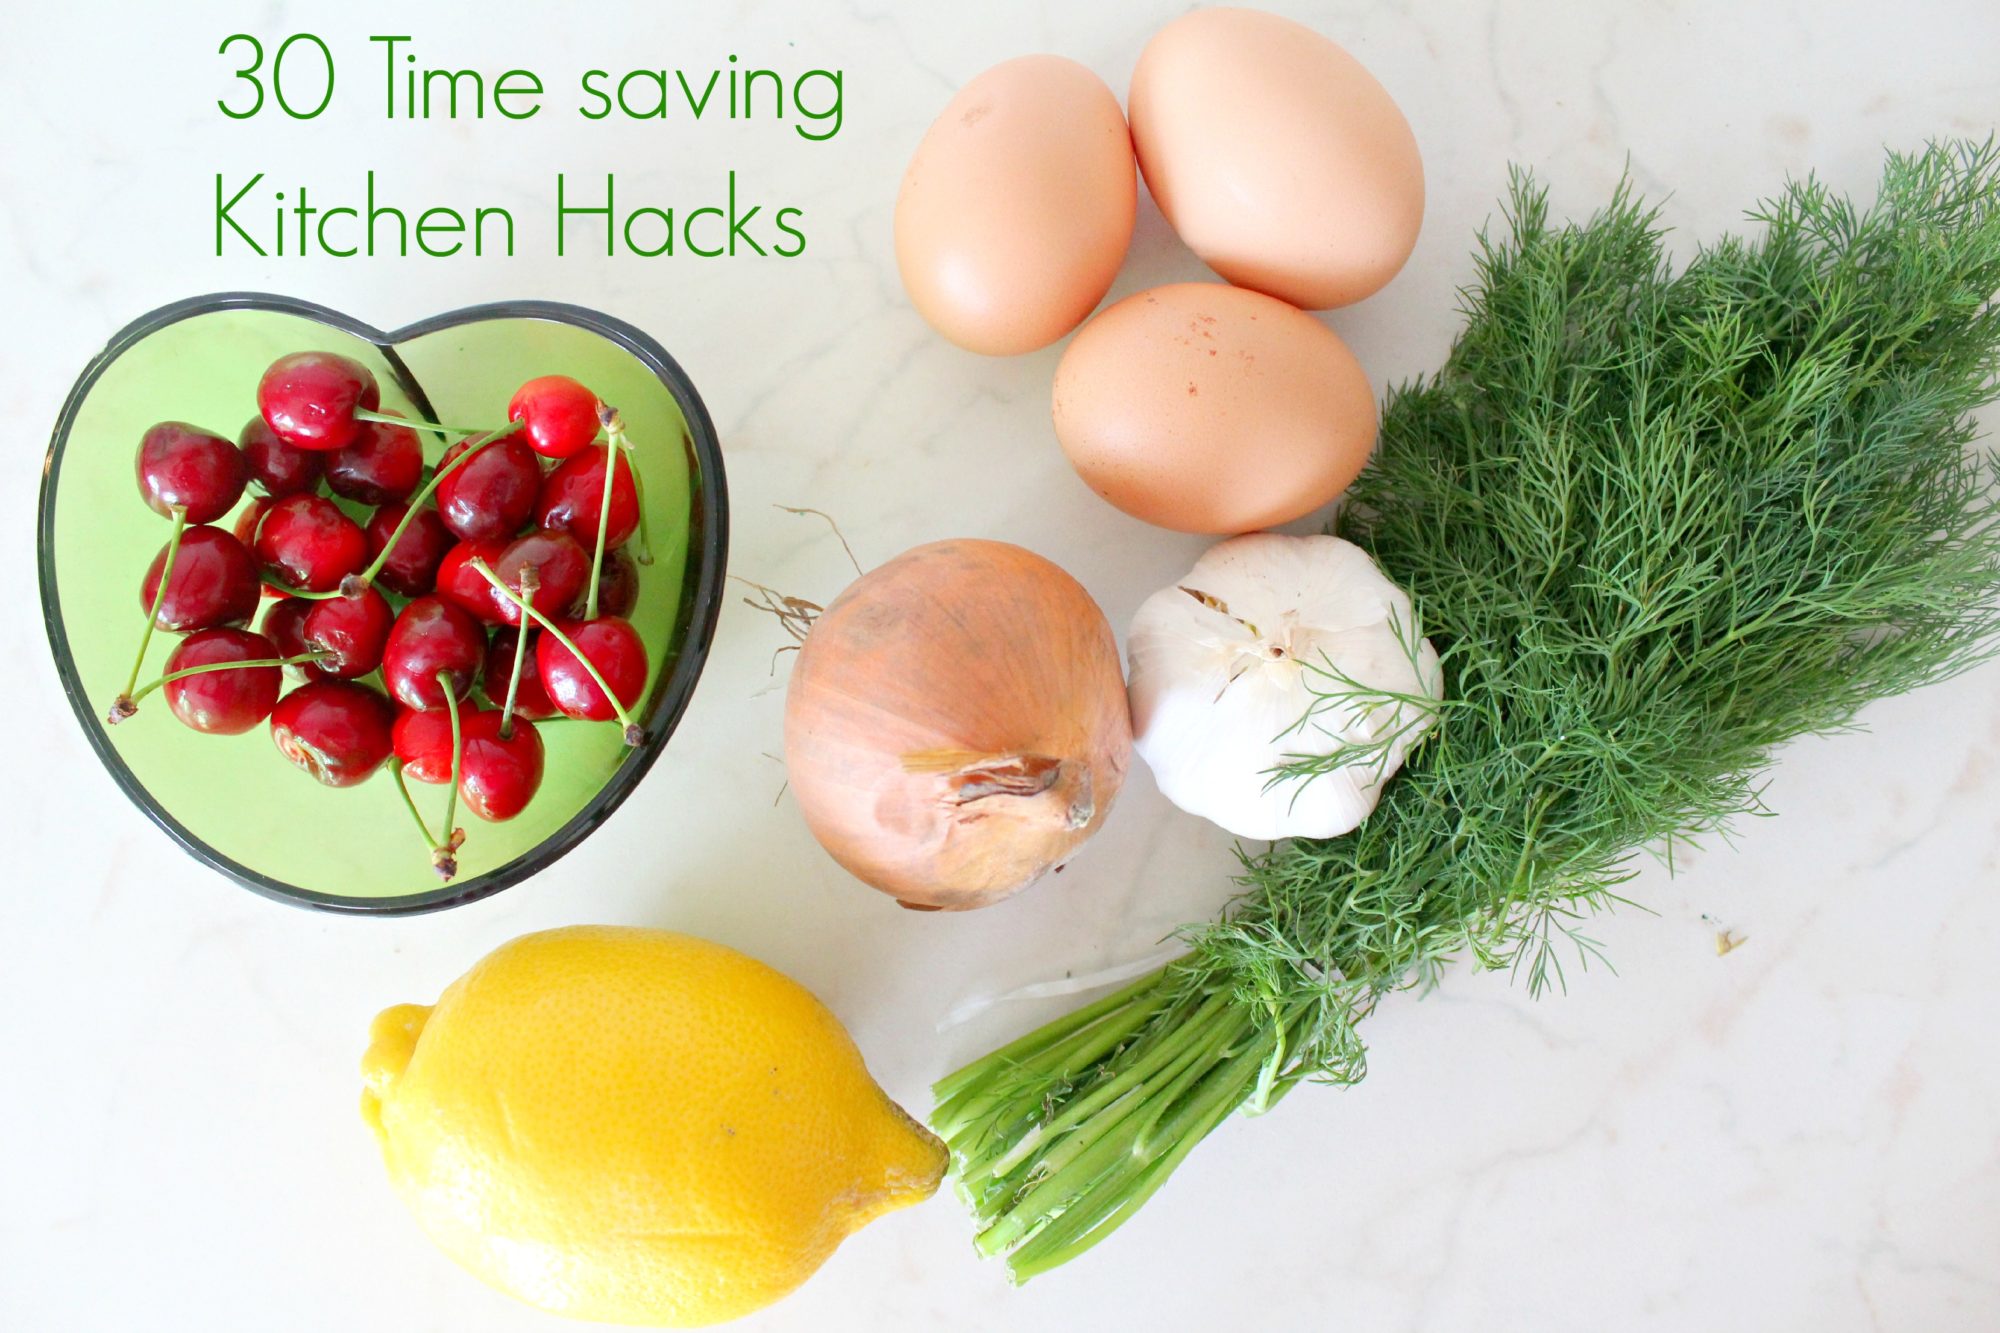 Time saving kitchen hacks